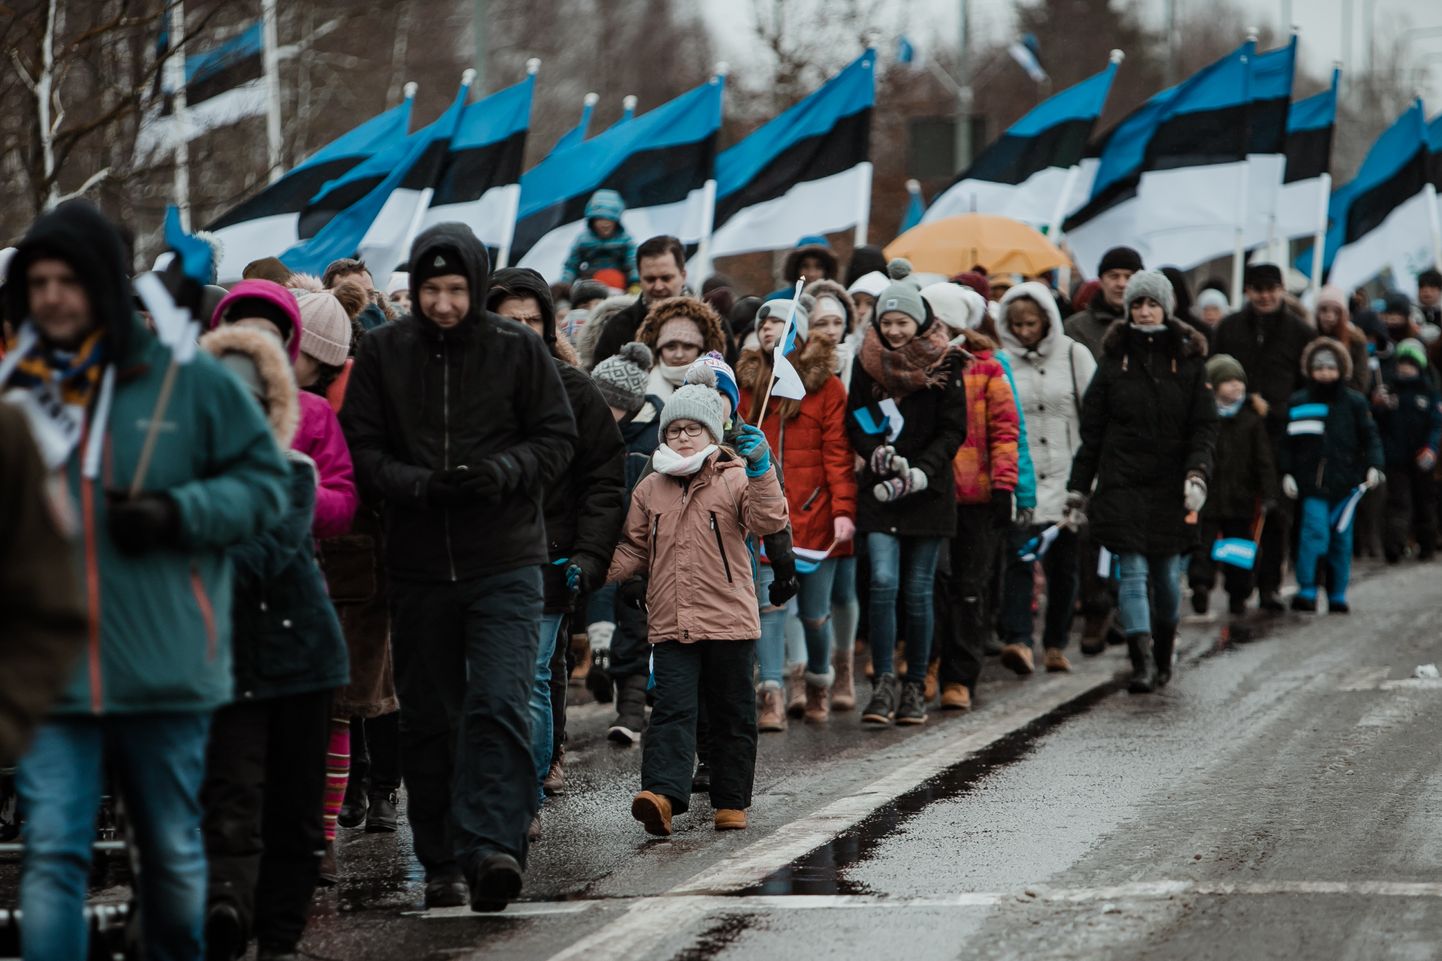 Pärnus algas riigi aastapäeva tähistamine juba täna, sest just Pärnus loeti 23. veebruaril 1918 toonase Endla teatri rõdult esmakordselt avalikult ette Eesti iseseisvusmanifest.